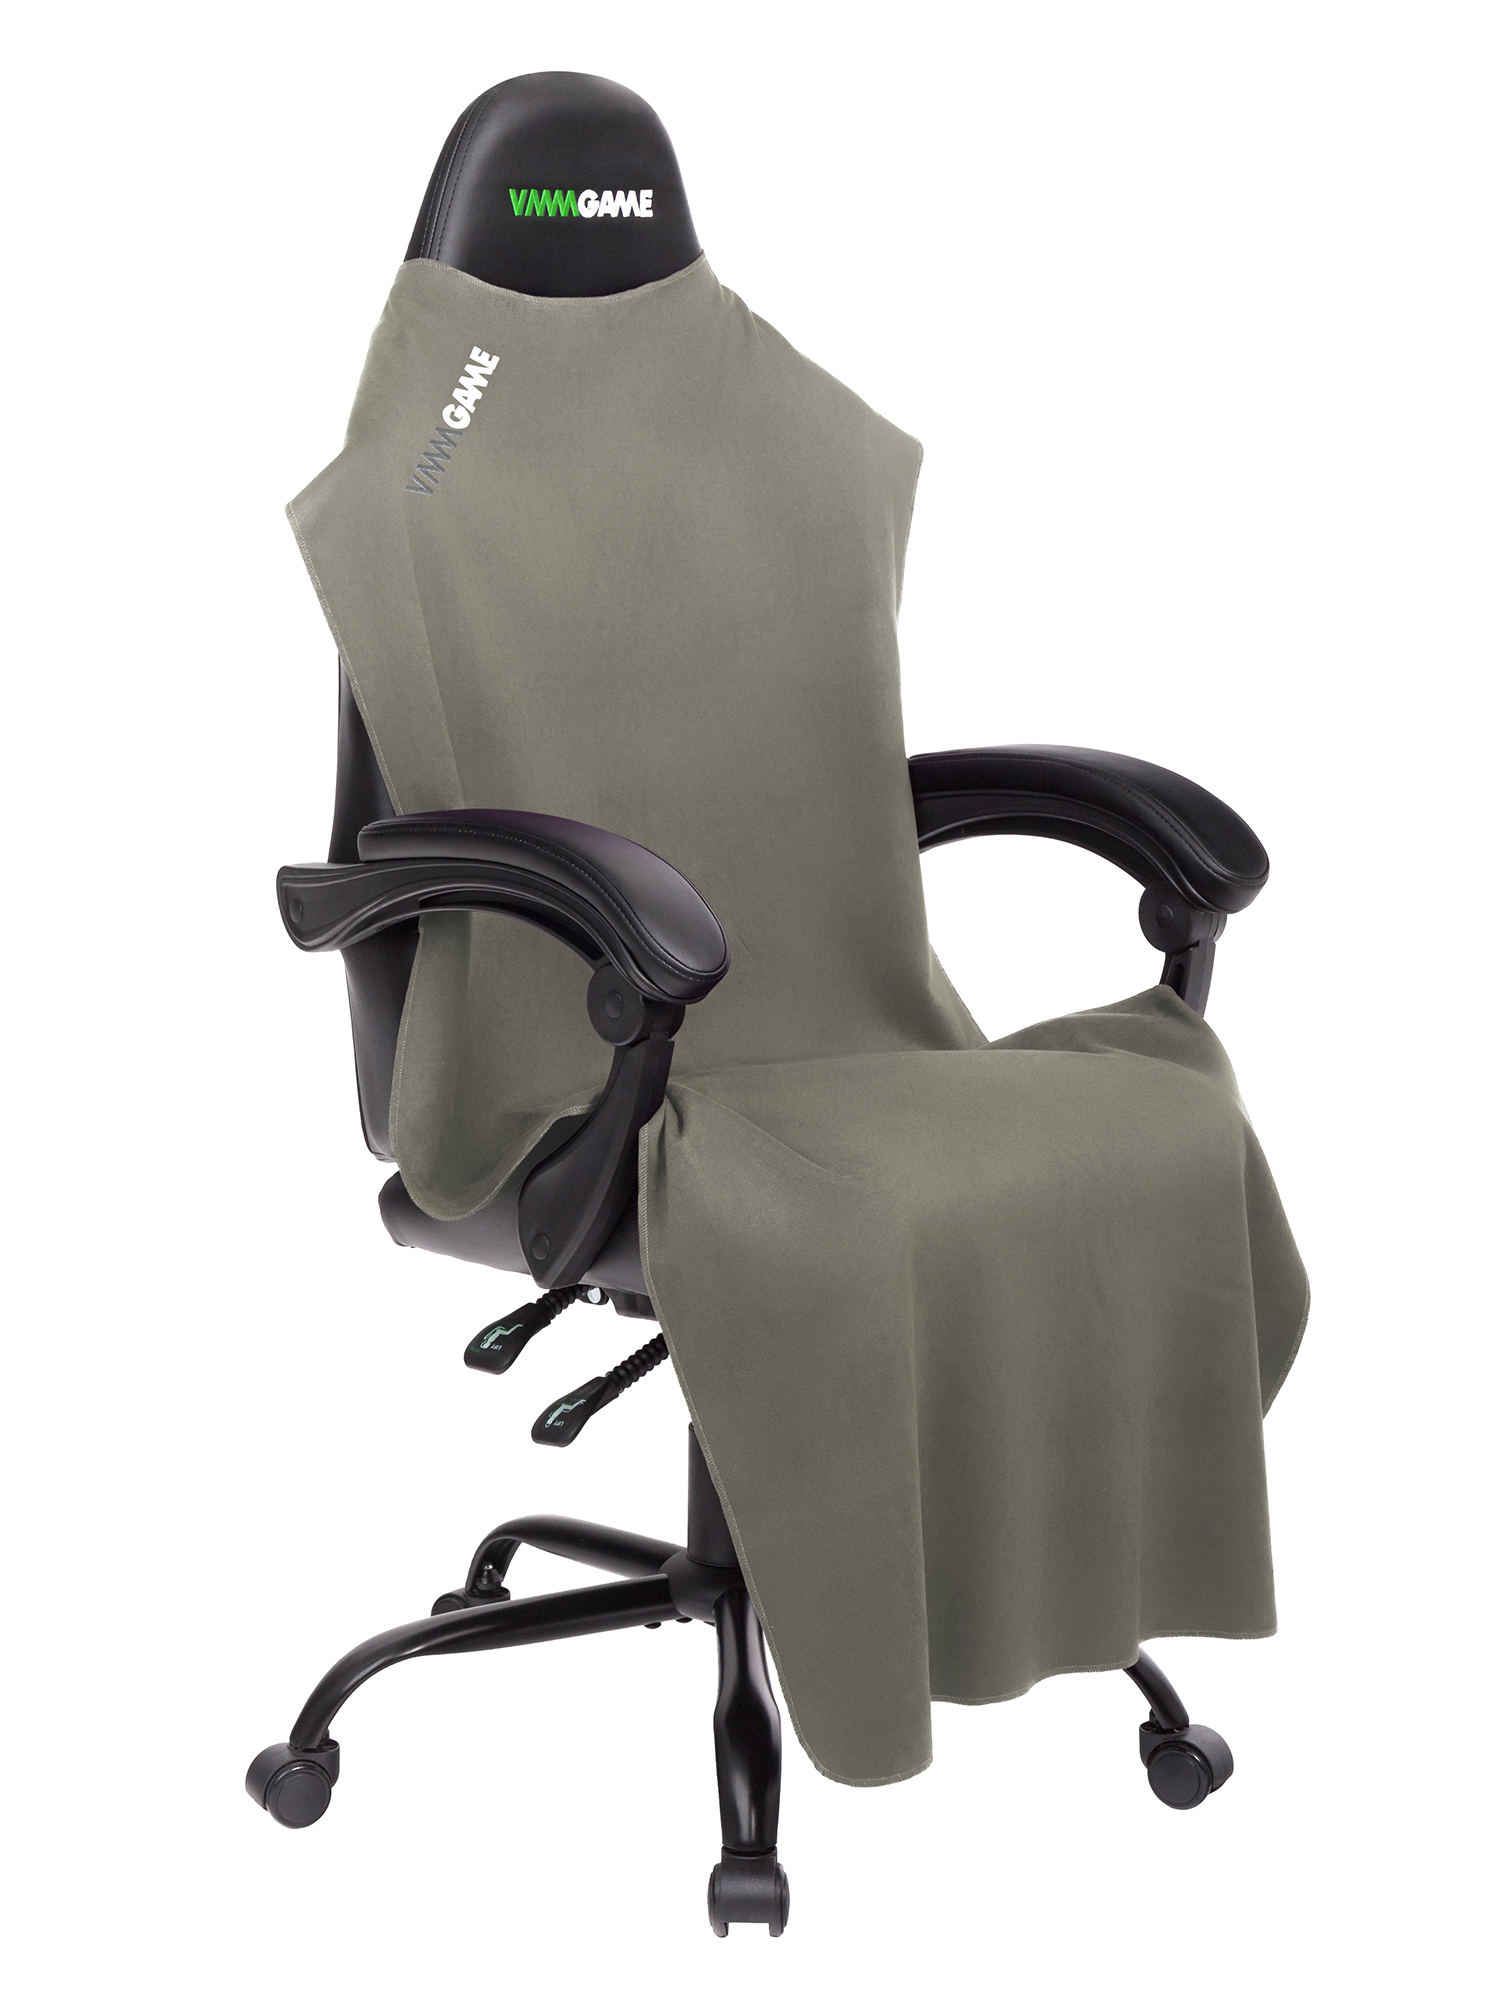 Чехлы на игровое кресло для компьютера - купить накидки на геймерские стульяв Москве с VMMGAME